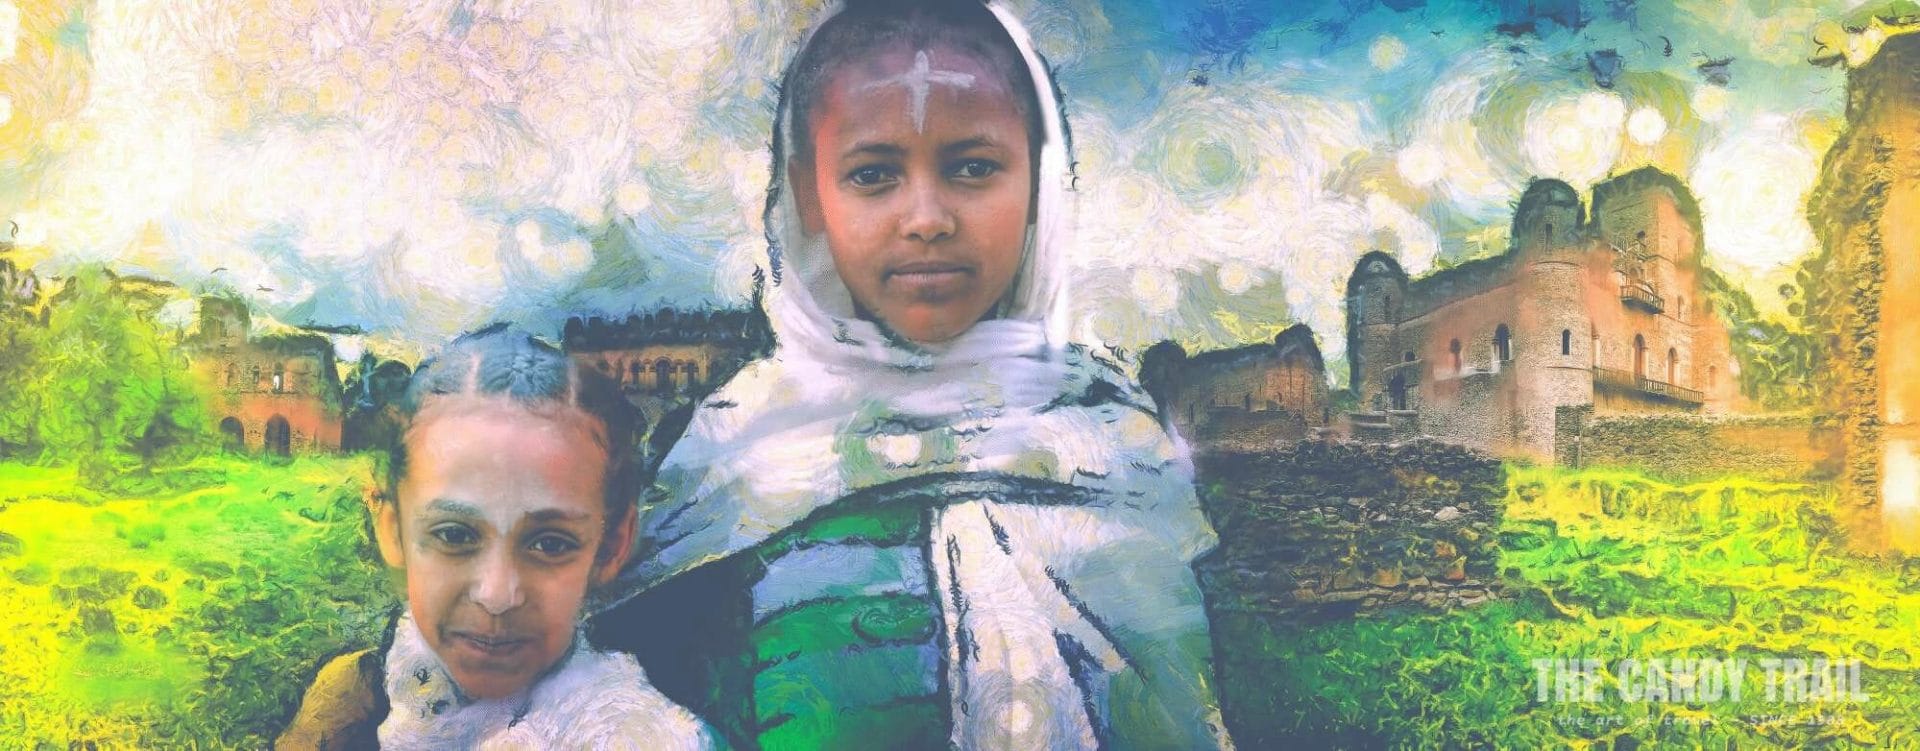 mrp-art-girls-of-gondar-ethiopia